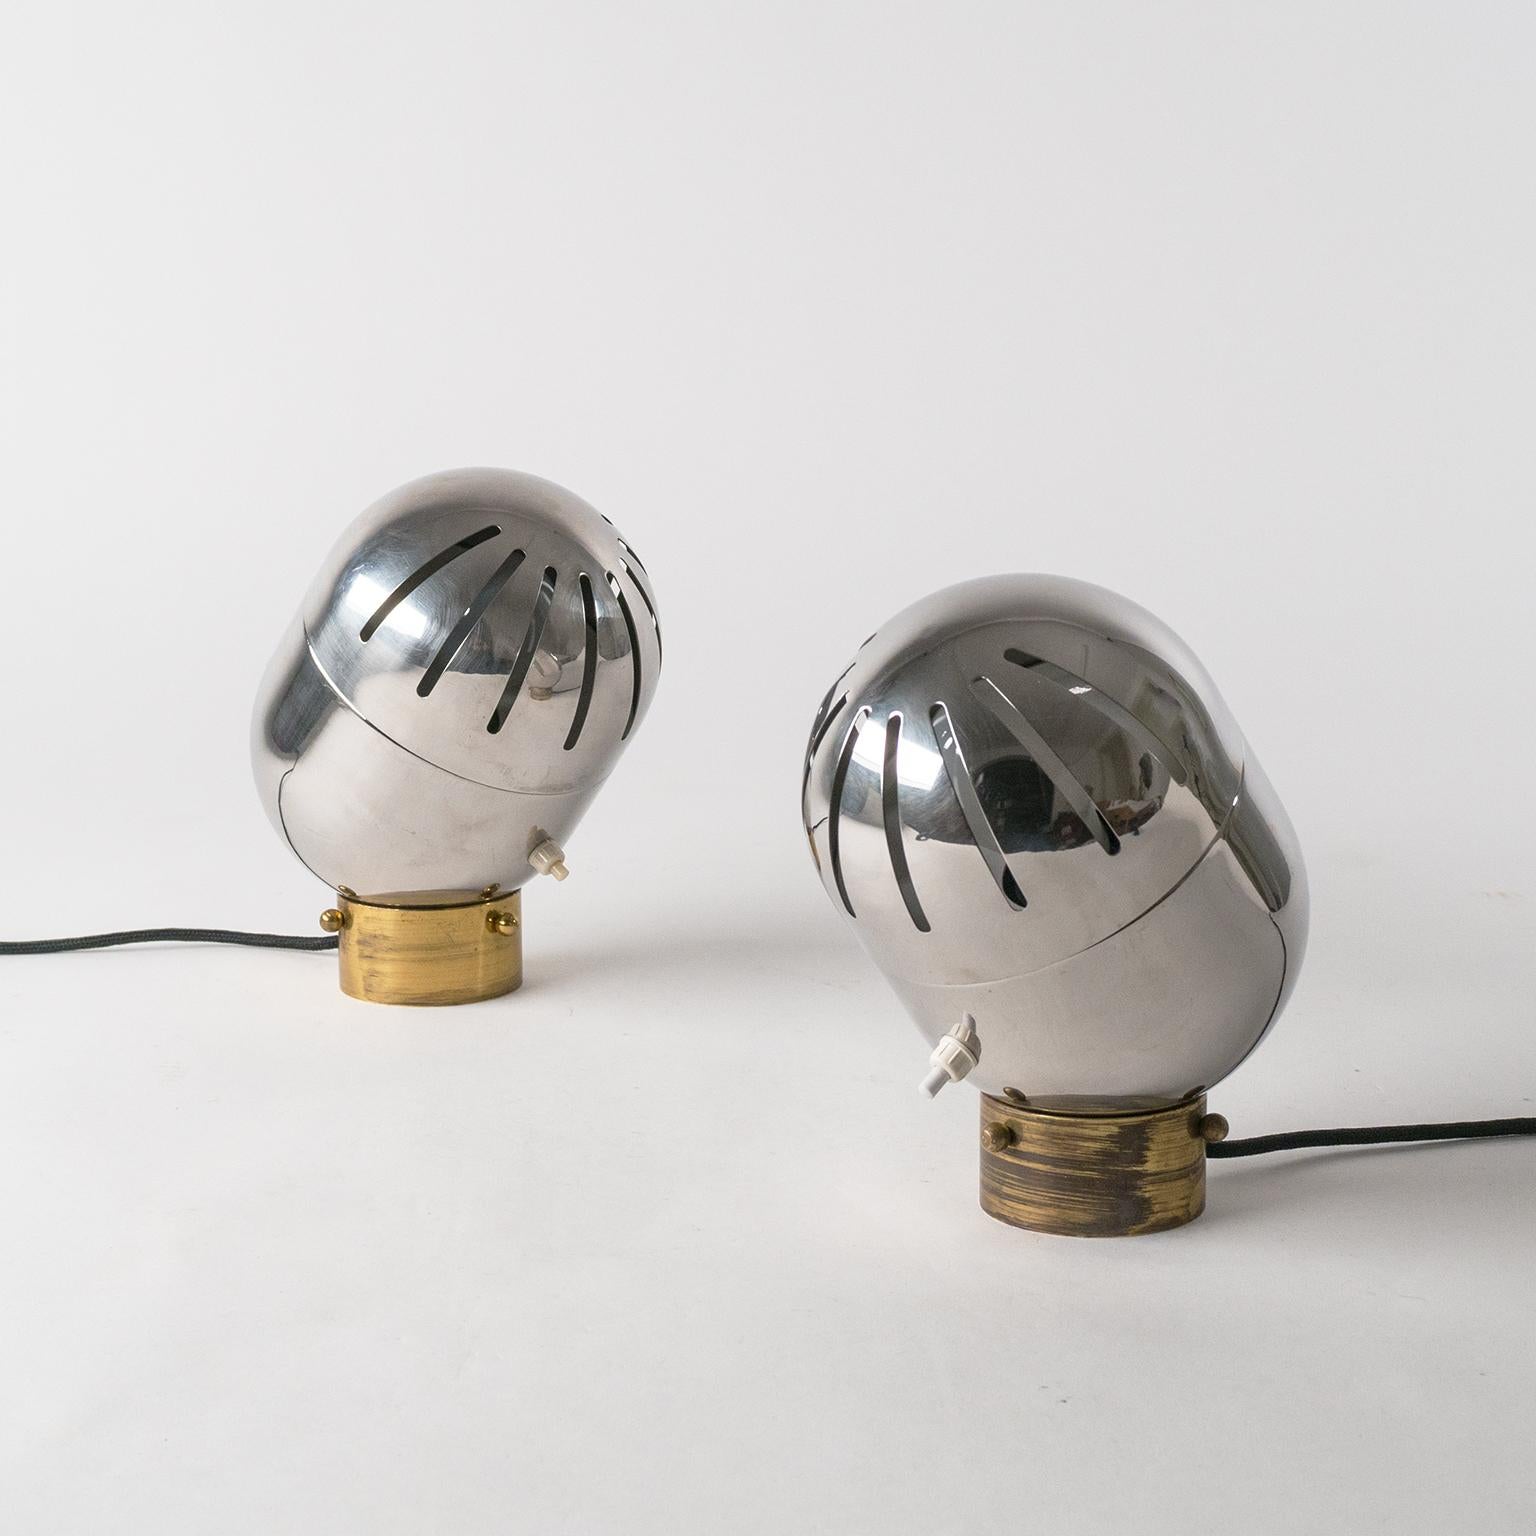 Seltenes Paar italienischer Chrom-Tischlampen von Reggiani, 1960er Jahre. Sehr skulpturales Design mit einem vollständig verchromten Gehäuse mit dezenten Schlitzen in der oberen Abdeckung (die um 360 Grad gedreht werden kann), durch die das Licht